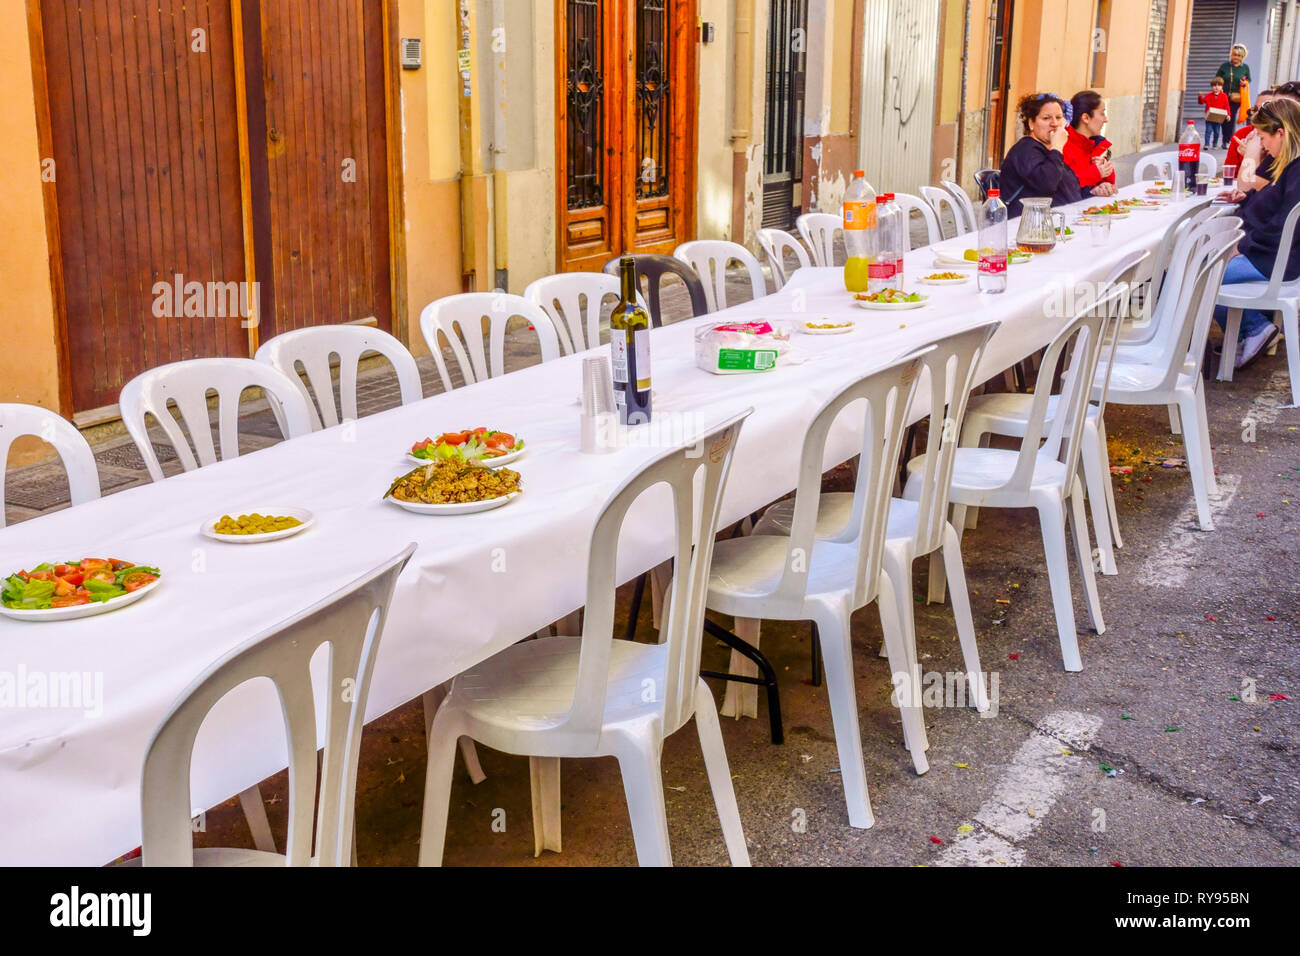 Die Mitglieder von Fallas bereiten Paella auf der Straße zu und essen dann zusammen zu Mittag. Valencia Fallas Party Barrio El Botanico Spanien Mittagessen Stockfoto